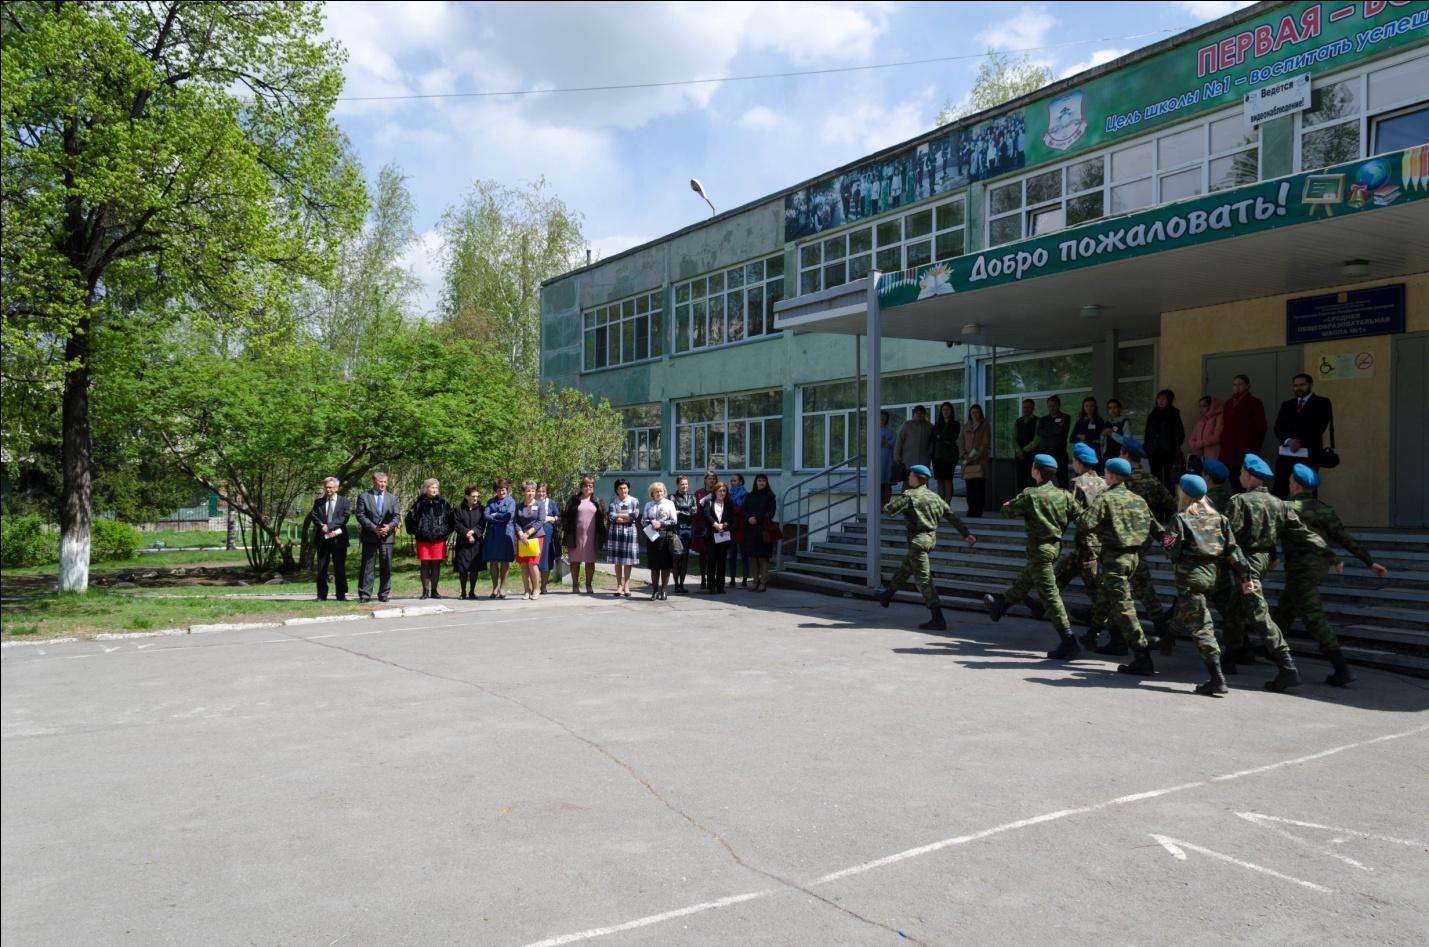 100 тыс. рублей за 100 баллов: мэр Бердска предложил поощрять школы по итогам ЕГЭ